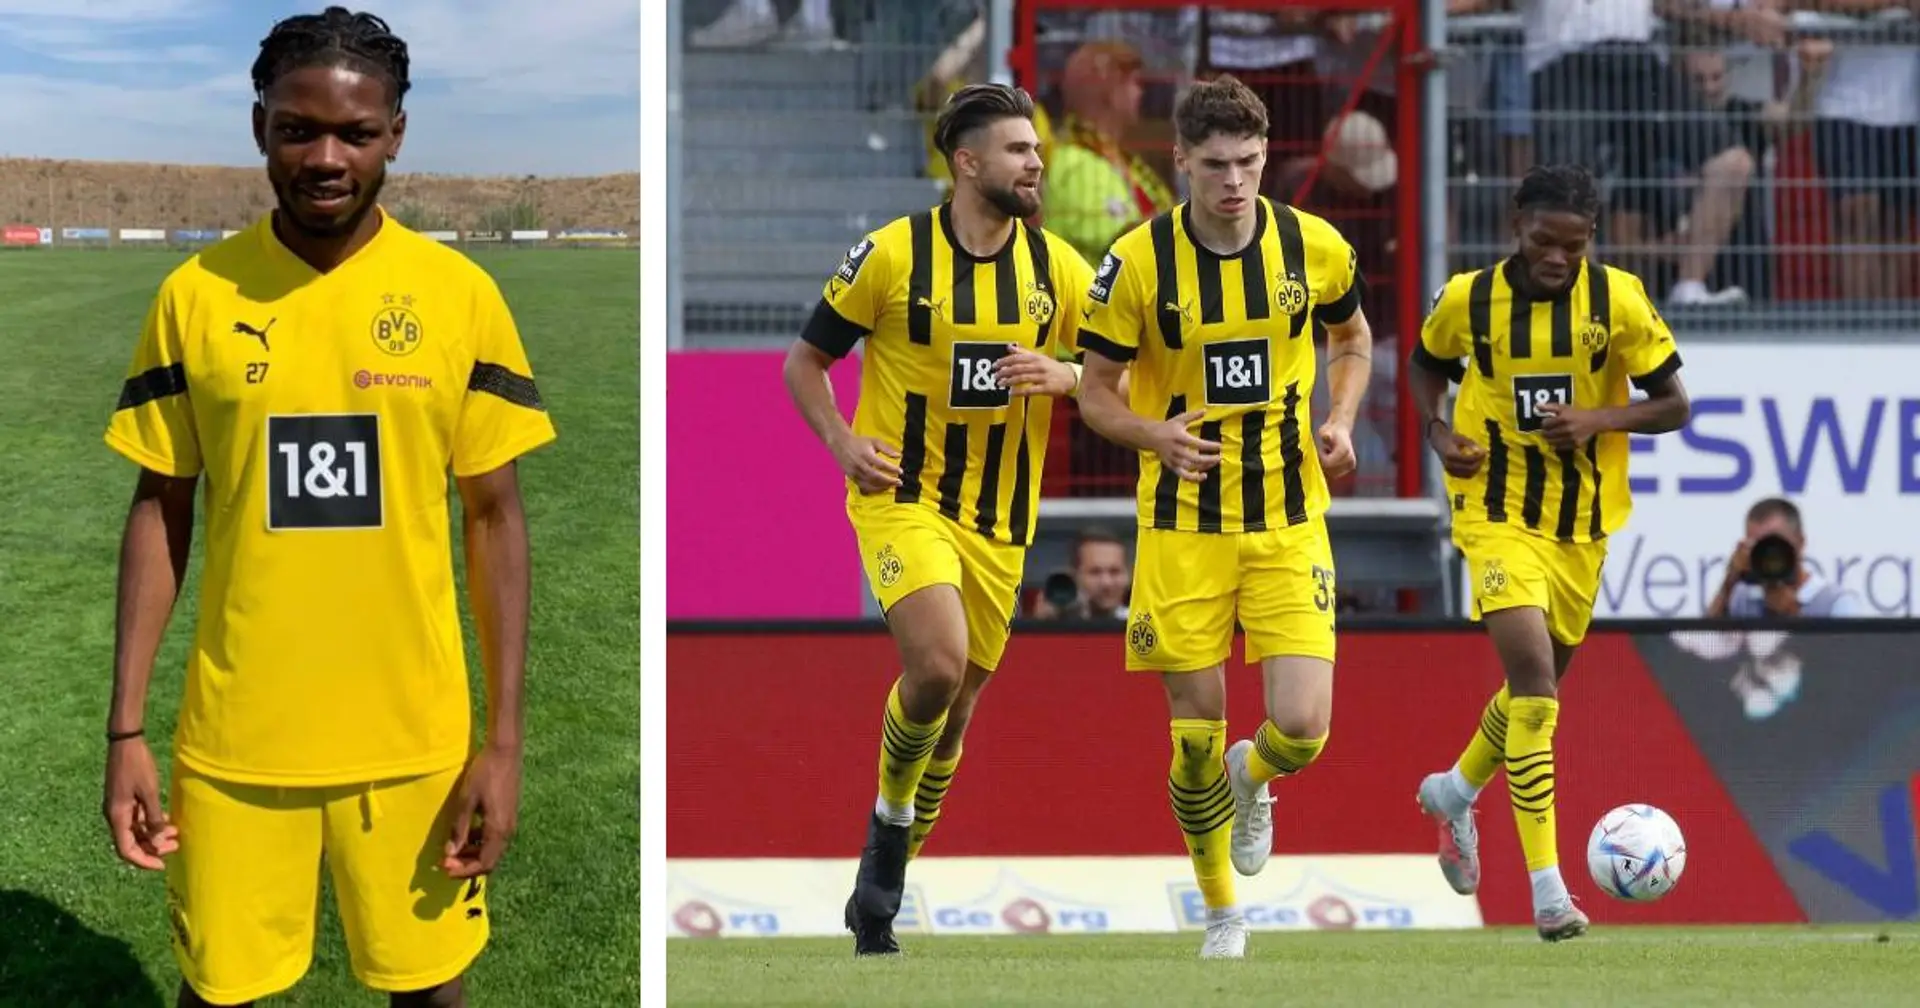 Kurios: BVB-U23 holt einen Punkt in Wiesbaden dank  Elongo-Yombo, der erst heute verpflichtet wurde!